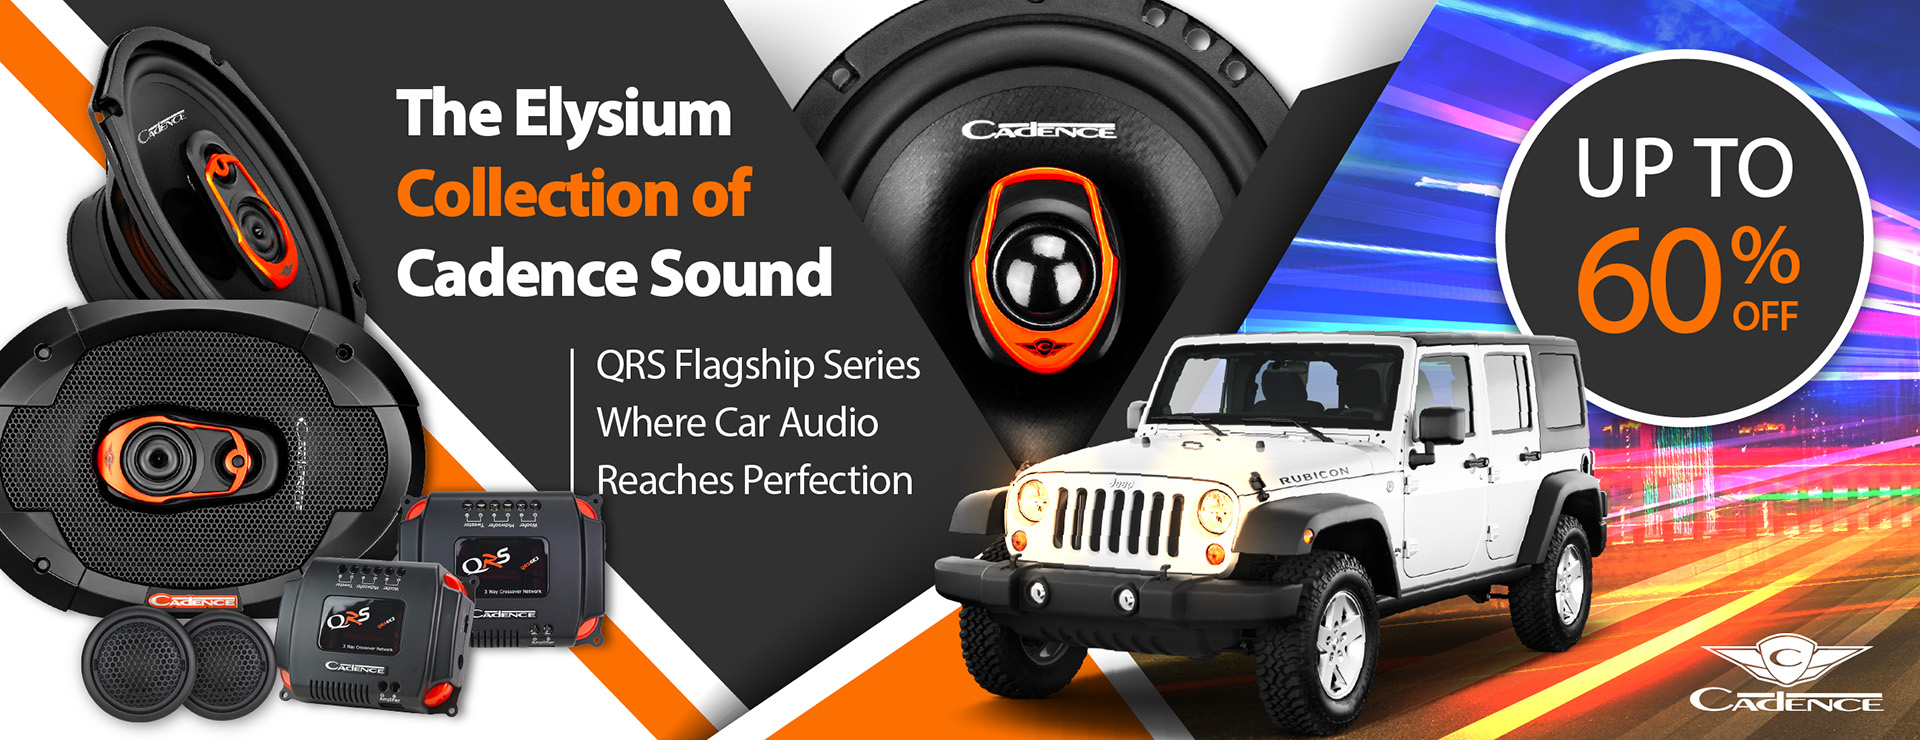 QRS Flagship Series Where Car Audio Reaches Perfection